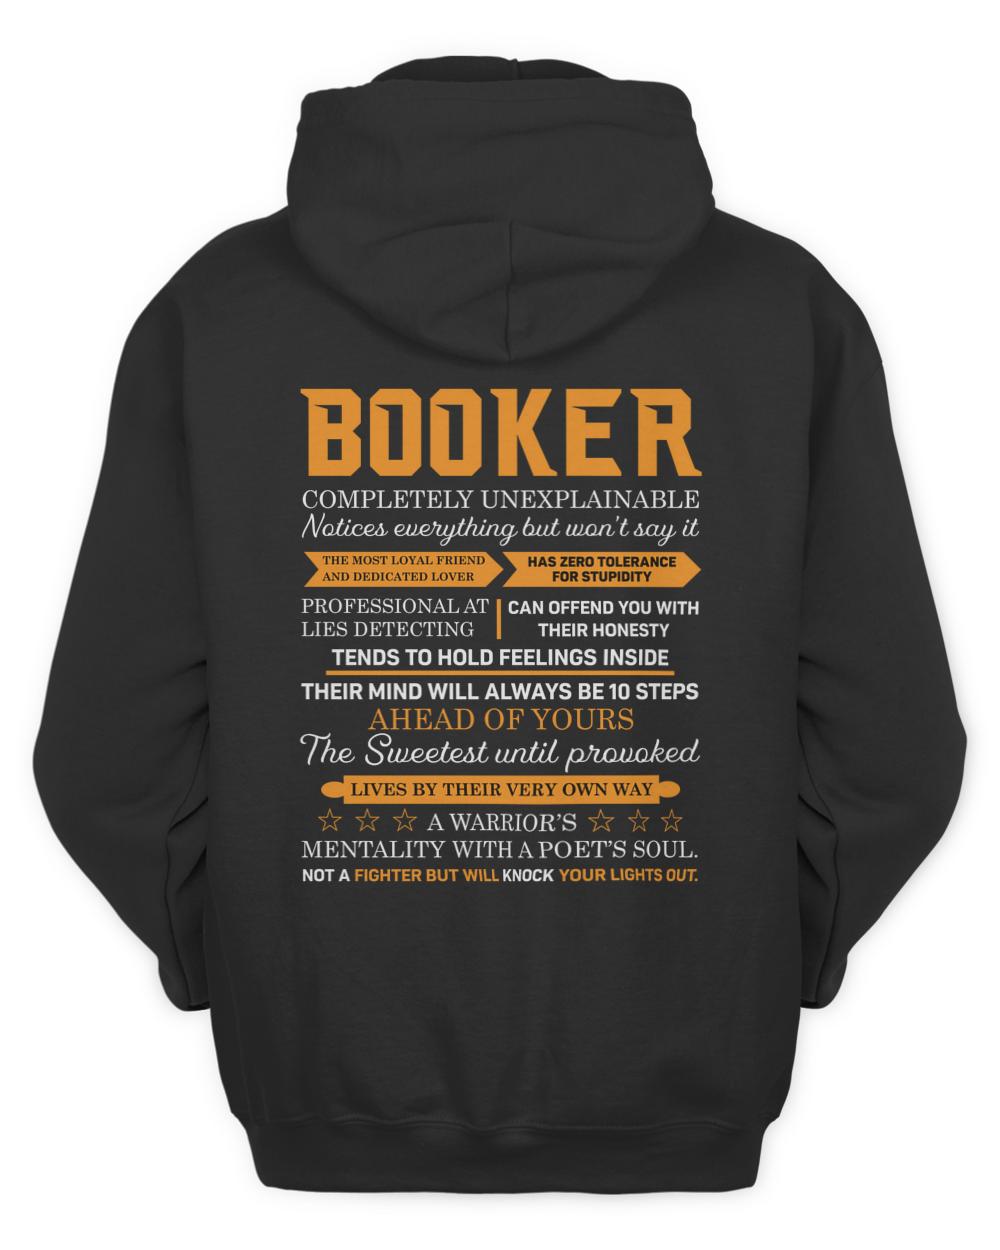 BOOKER-13K-N1-01